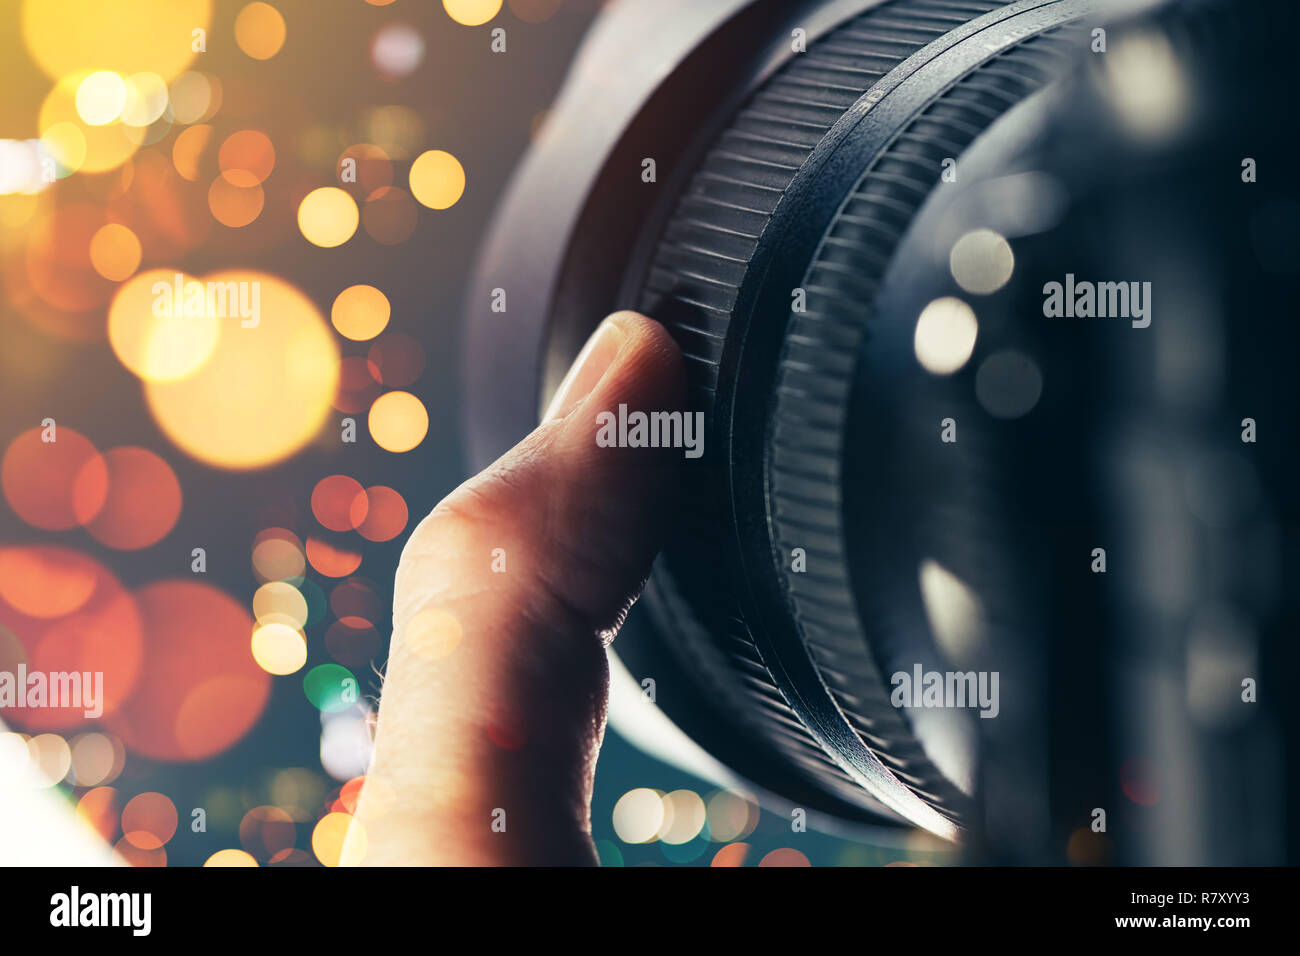 Fotografo con obiettivo zoom sulla fotocamera reflex digitale, close up del dito che ruotando l'anello sulle attrezzature fotografiche parte Foto Stock